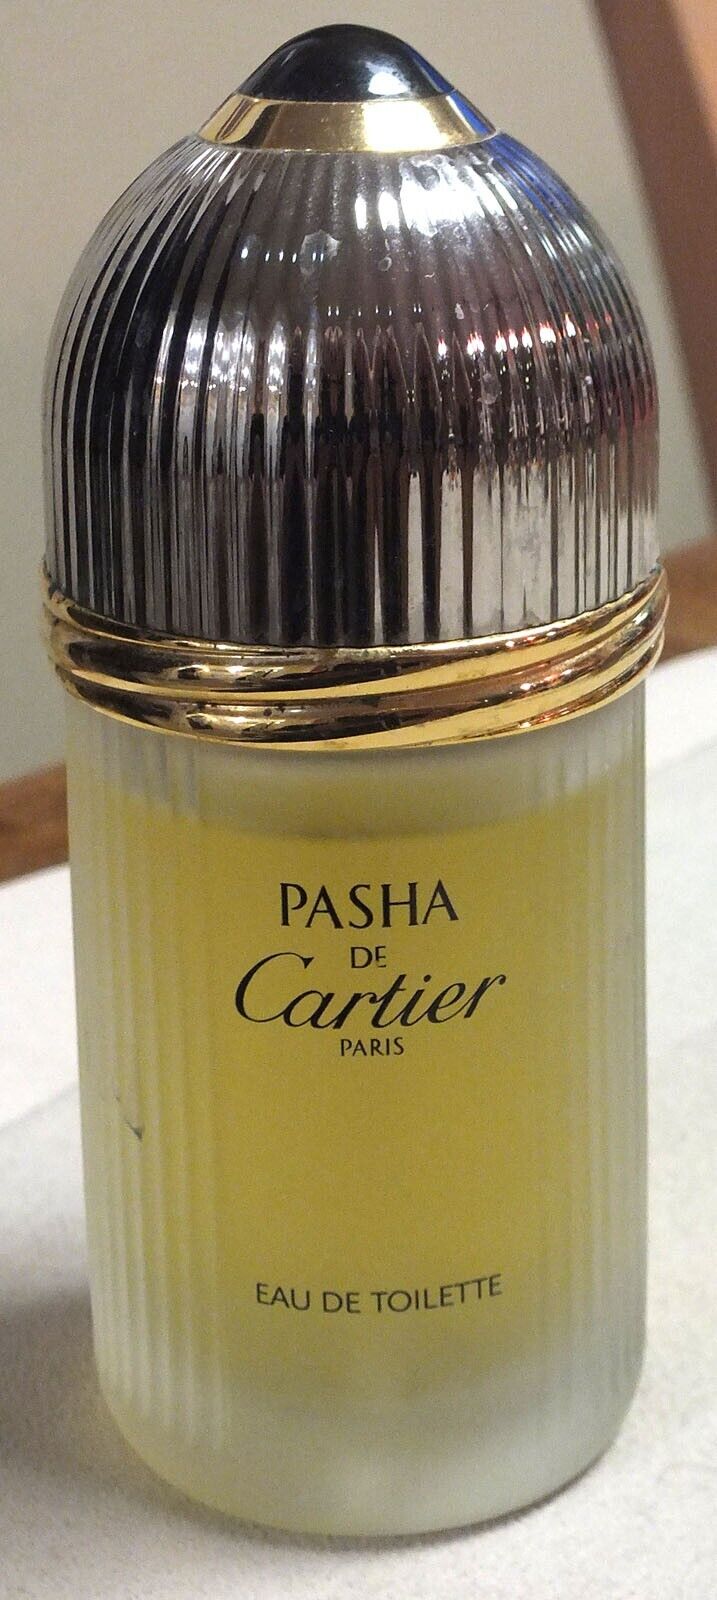 Pasha de Cartier by Cartier EDT Eau de Toilette 3.3oz/100ml Spray Paris